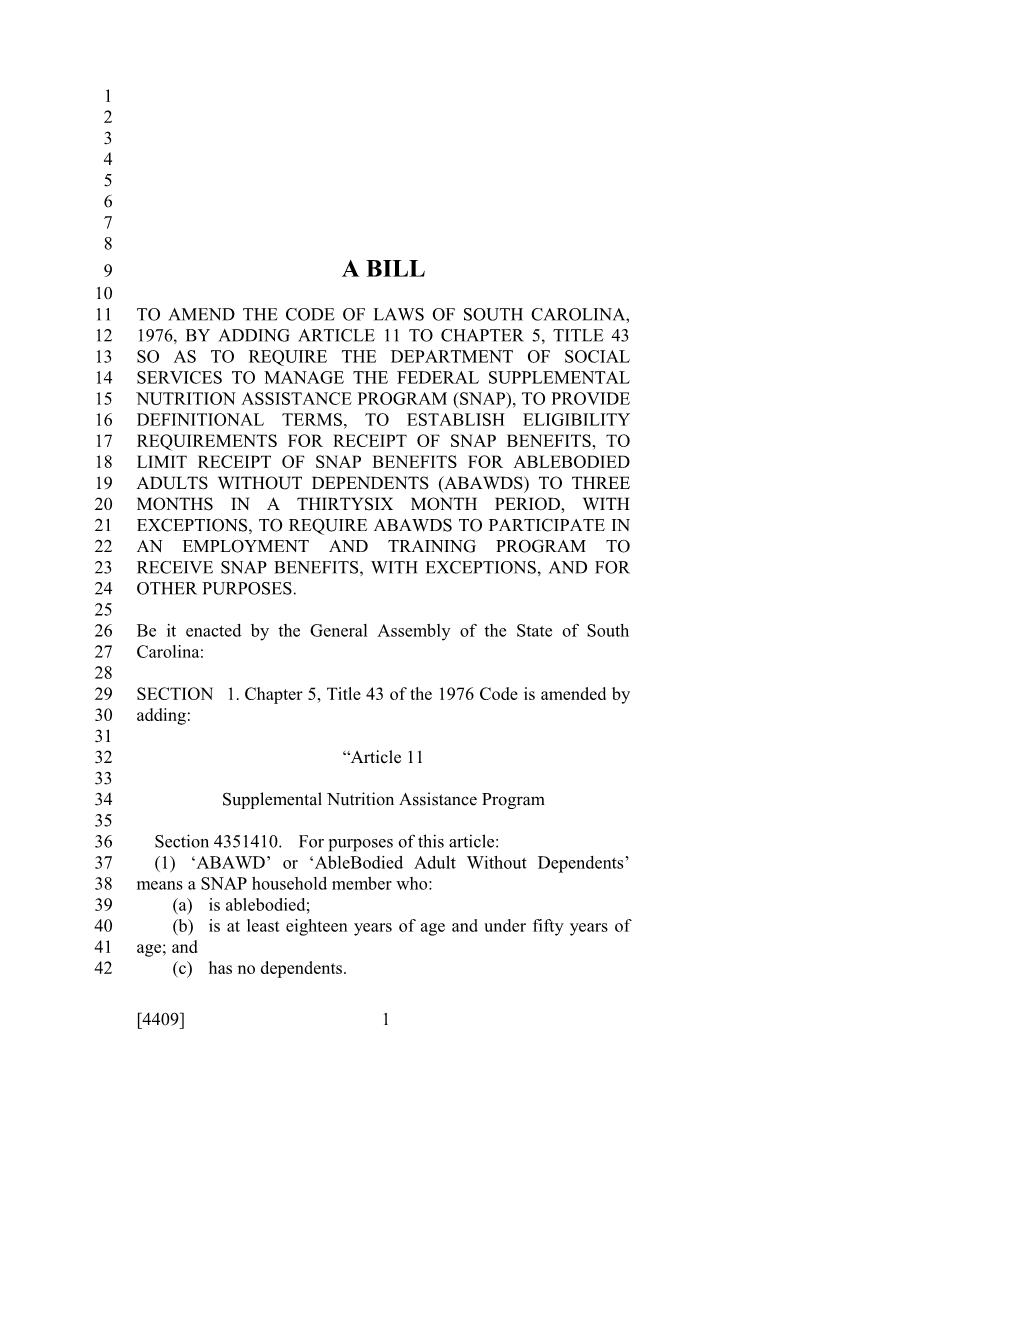 2015-2016 Bill 4409 Text of Previous Version (Dec. 3, 2015) - South Carolina Legislature Online